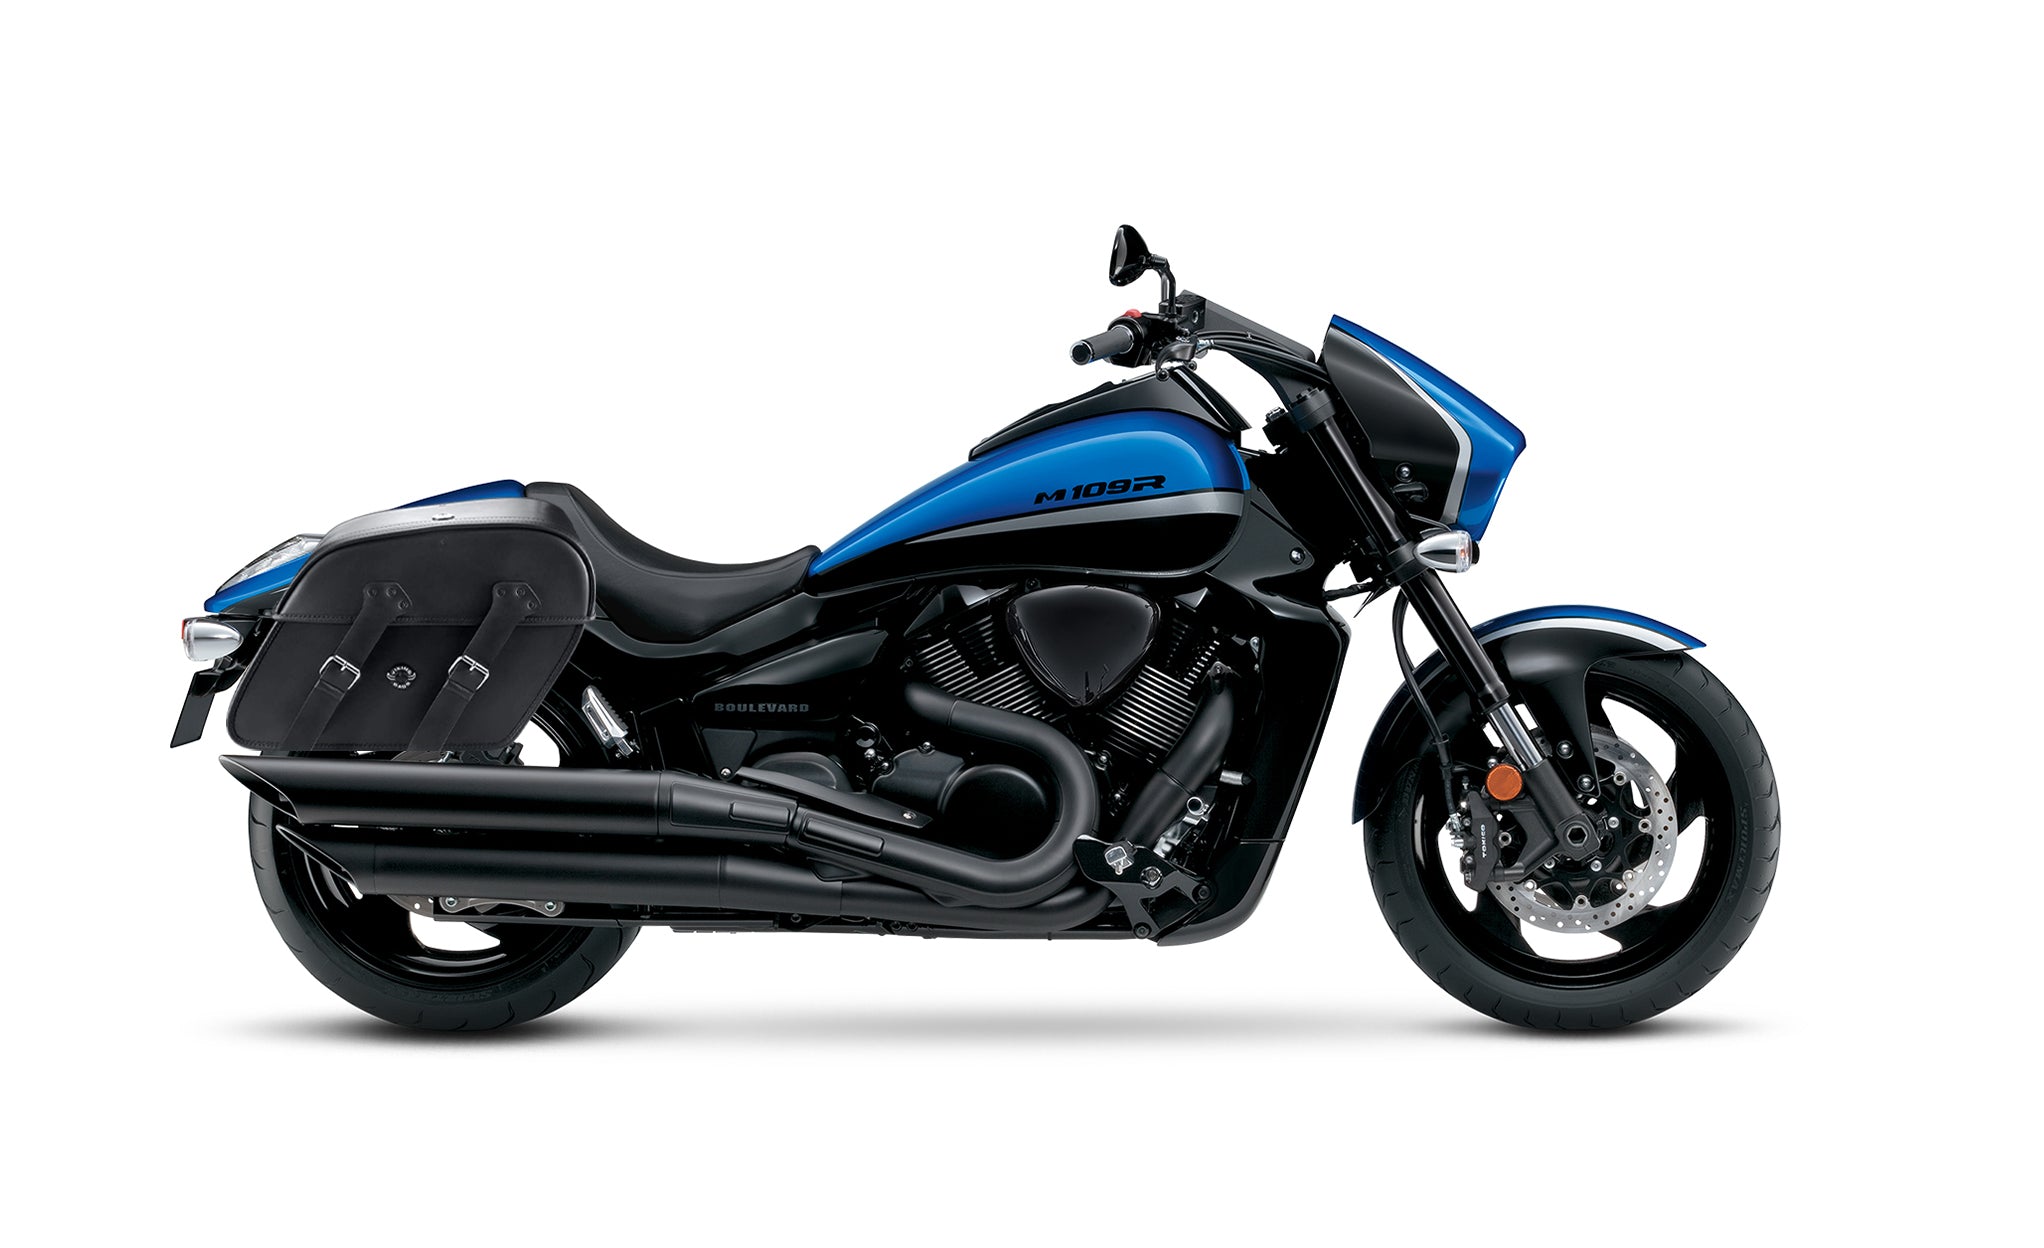 Viking Raven Large Suzuki Boulevard M109 Vzr1800 Motorcycle Leather Saddlebags on Bike Photo @expand